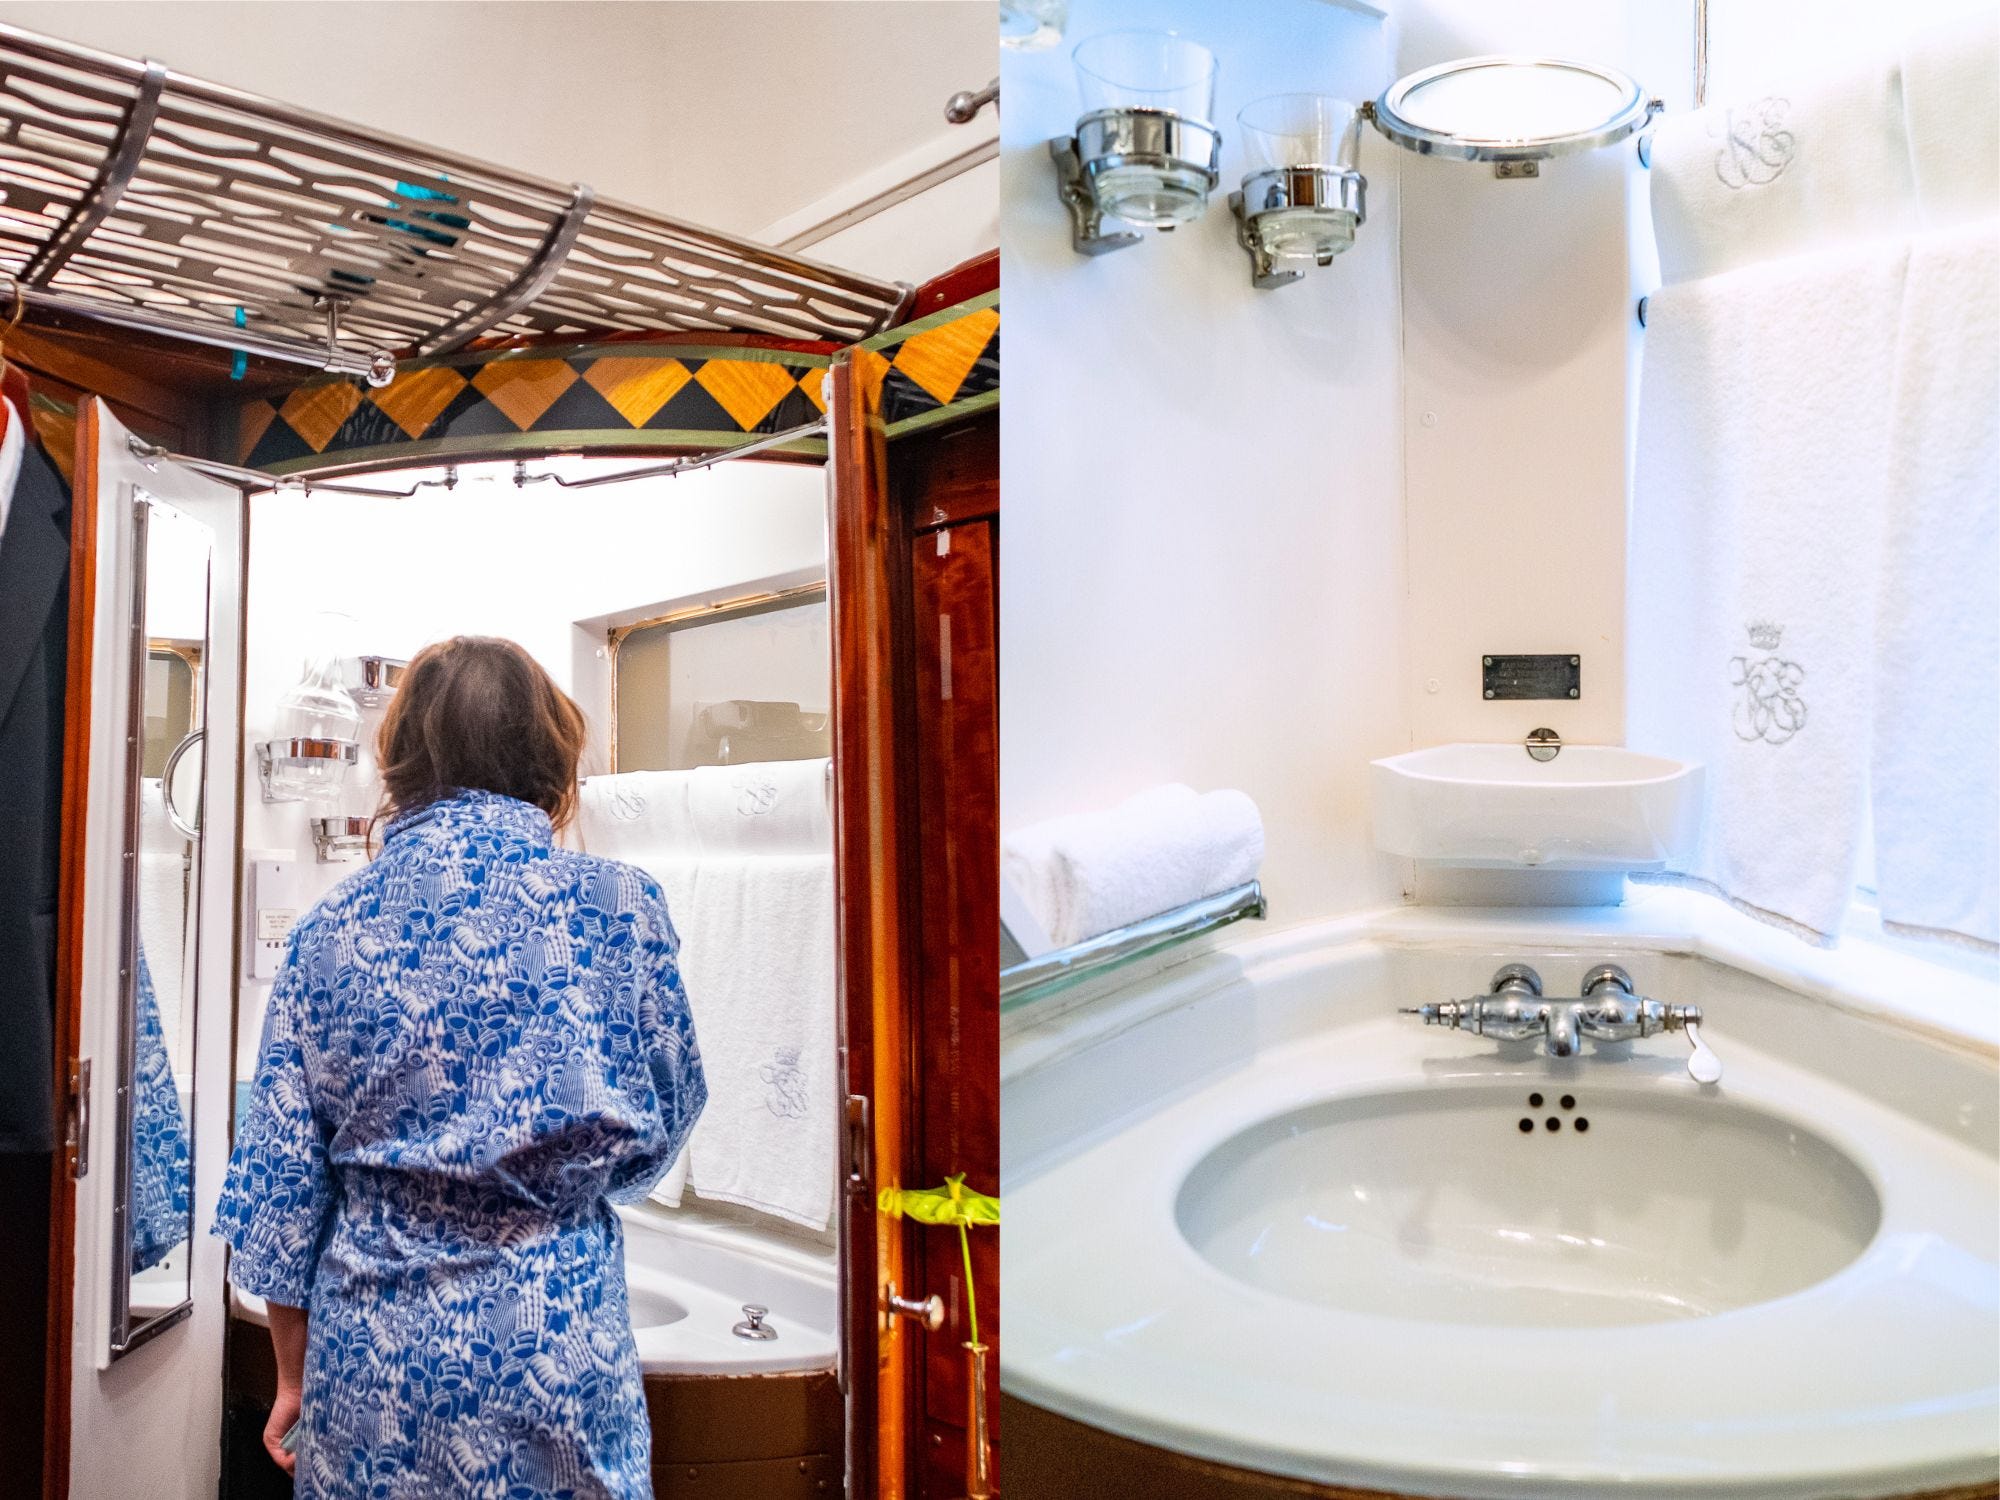 Links: Der Autor steht in einem blauen Gewand vor Waschbecken und Spiegel.  Rechts: Ein weißes Waschbecken mit kreisförmigem Drehspiegel